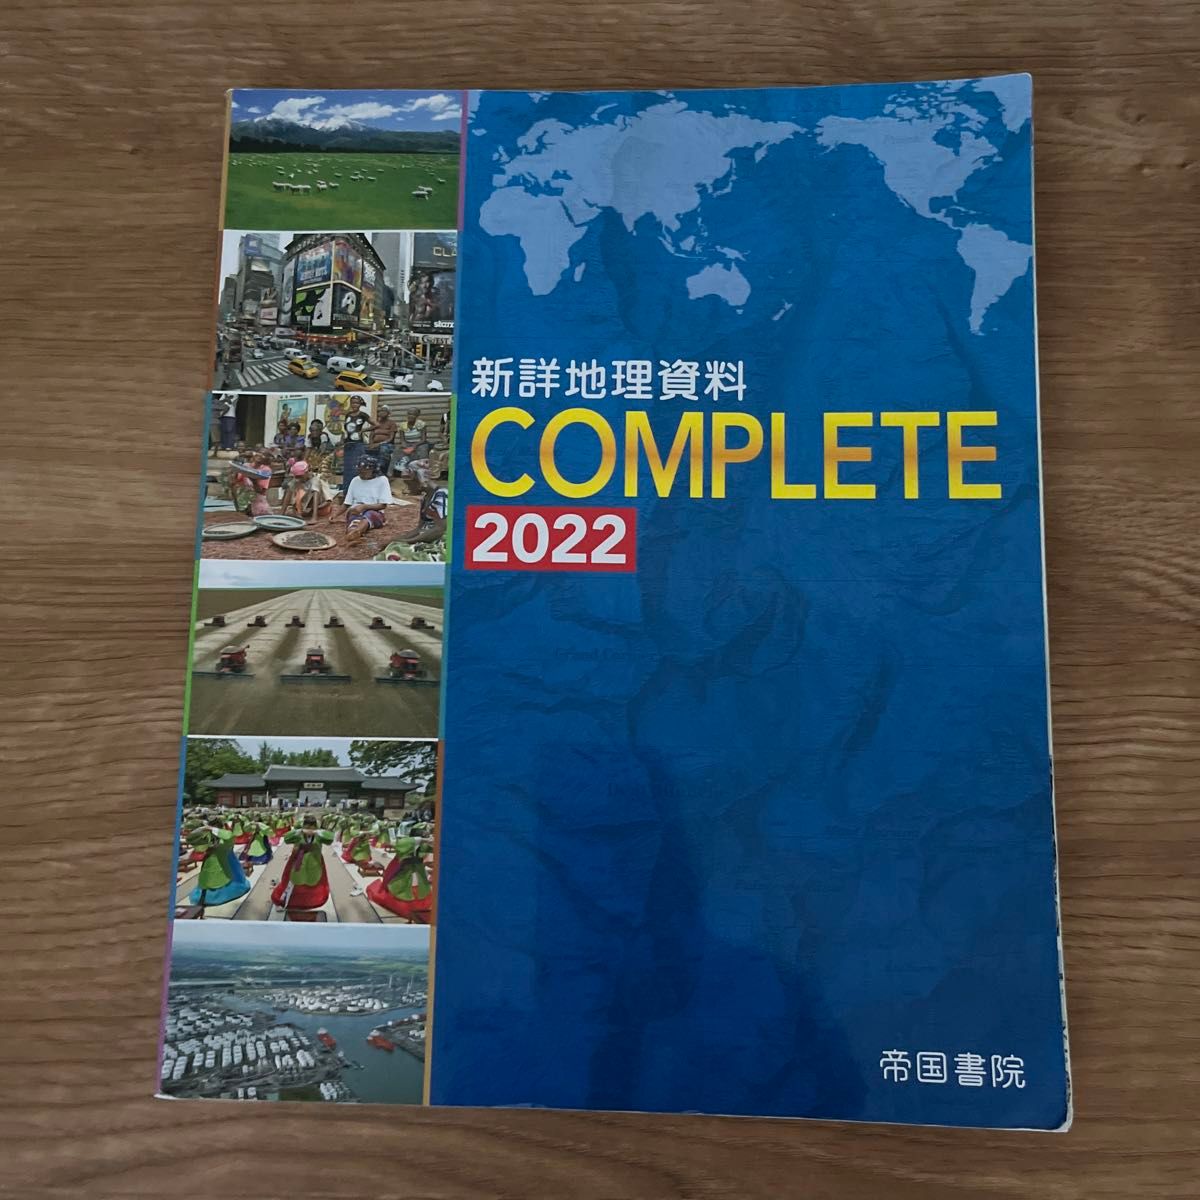 新詳地理資料COMPLETE 2022  別冊地図形・白地図ワーク